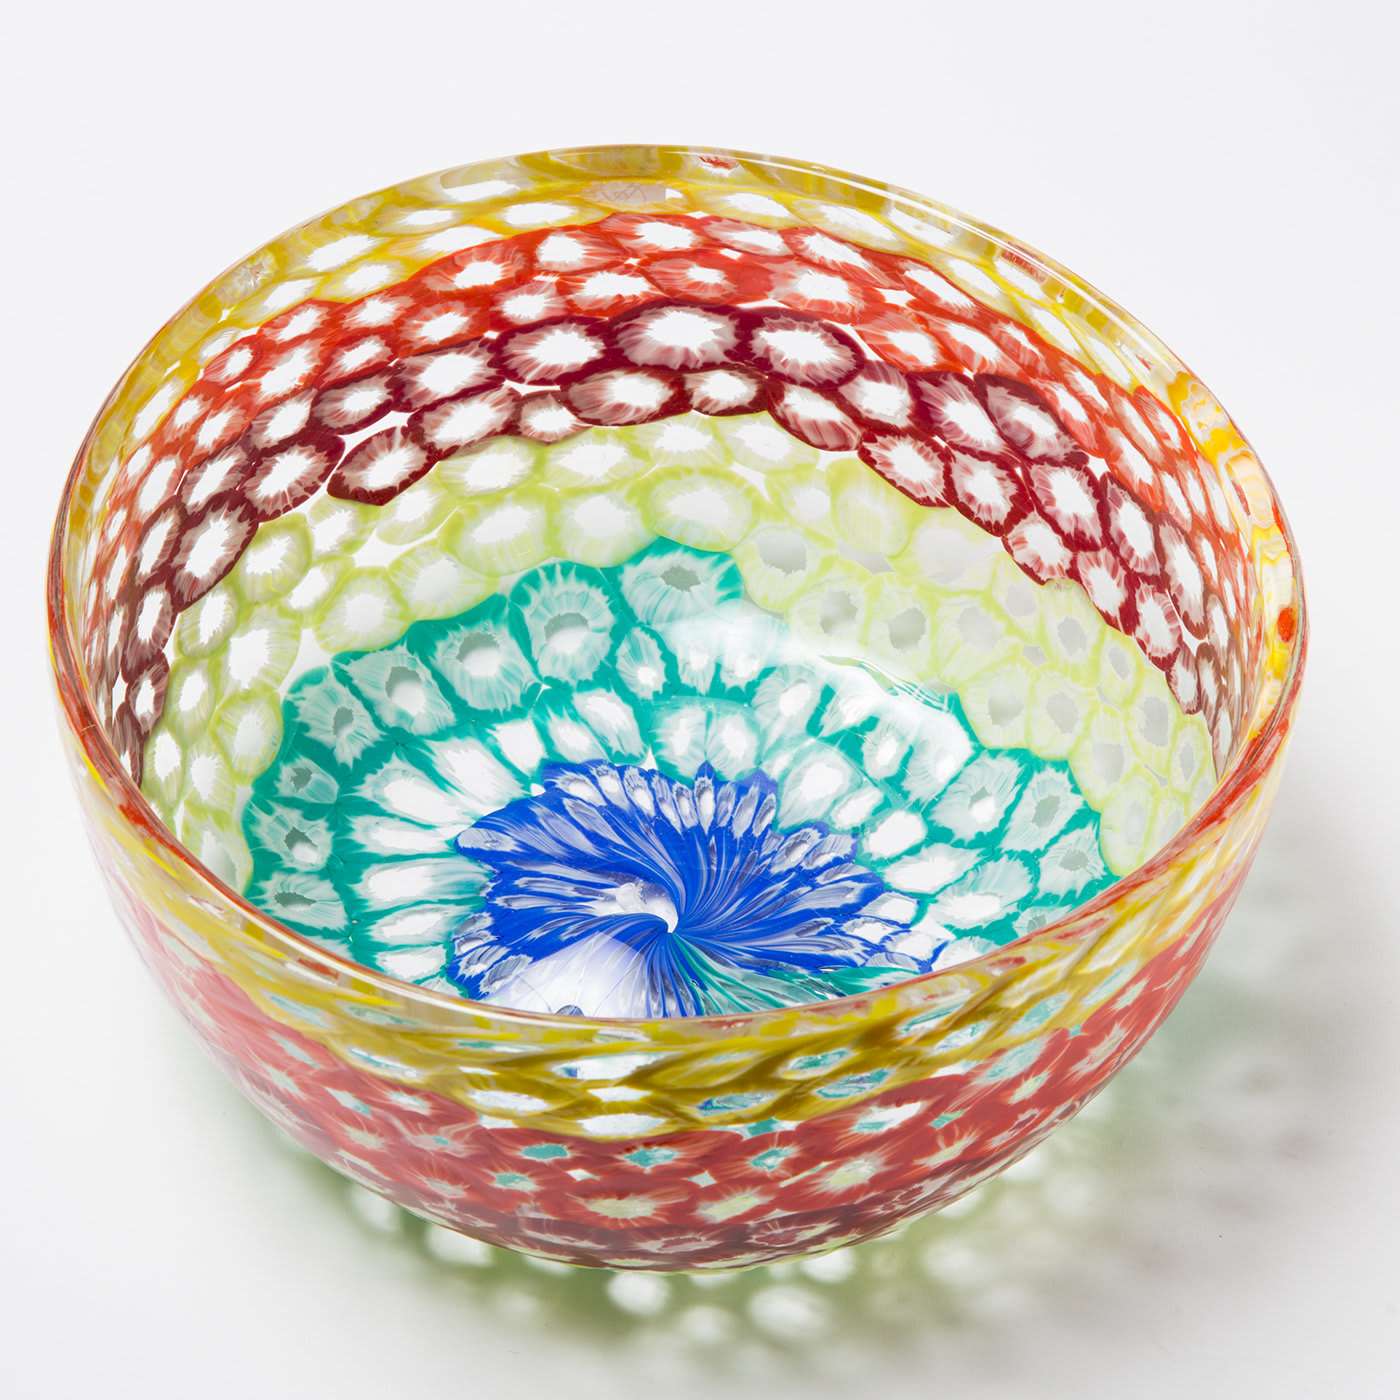 Multicolored Murano Glass Bowl - Vetrerie Artistiche Dipi